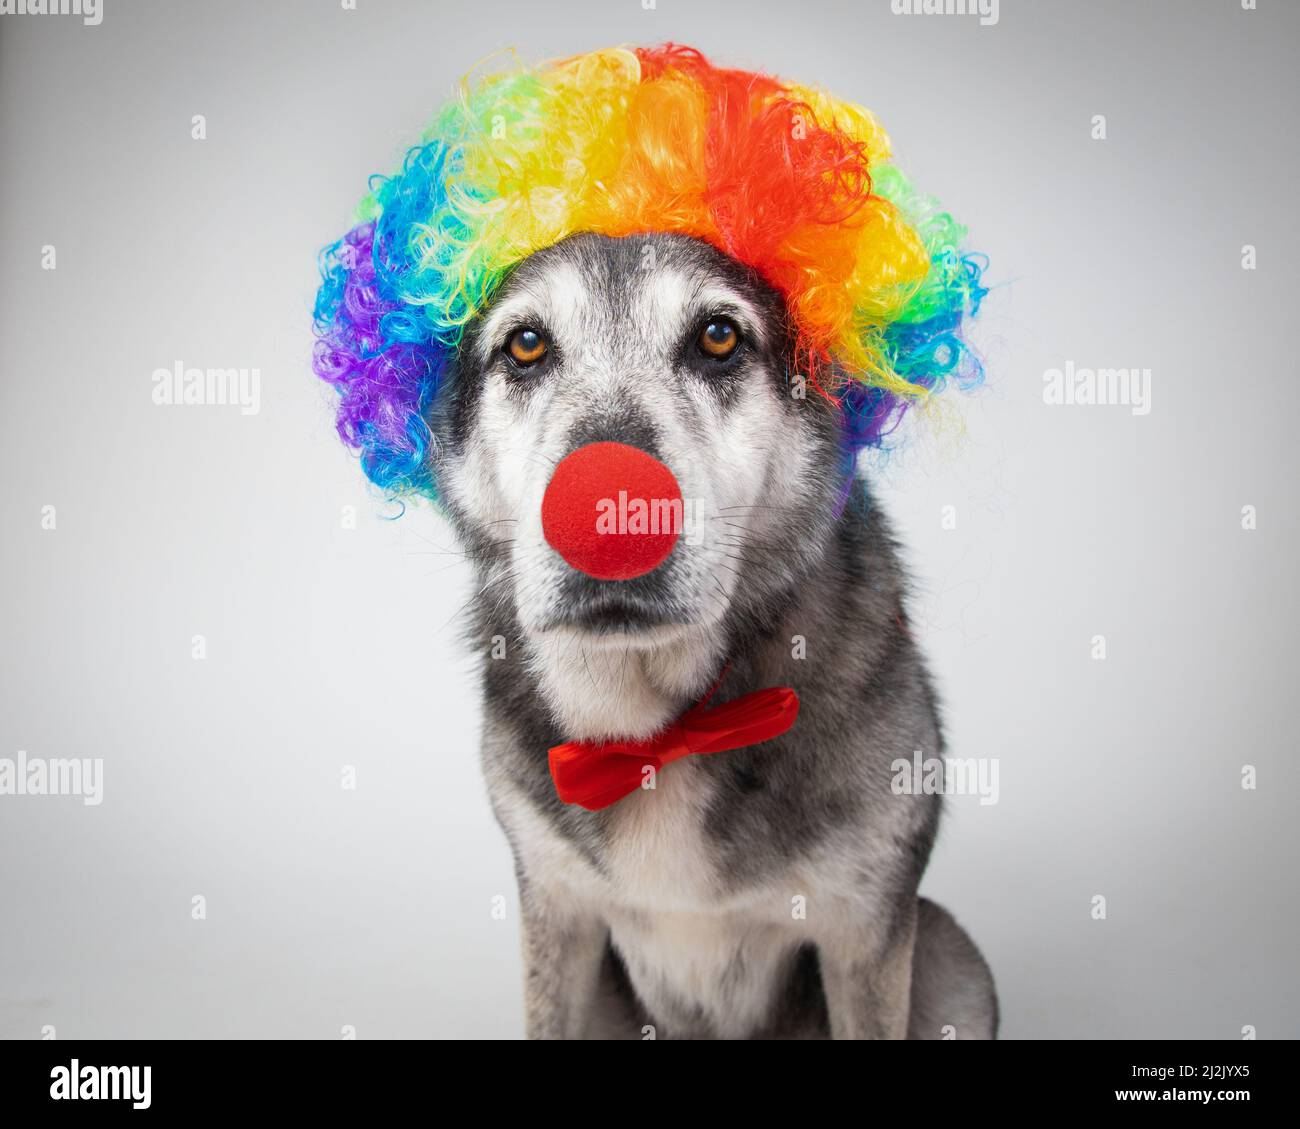 Portrait d'un husky australien portant un nez clown, une perruque multicolore et un noeud papillon Banque D'Images